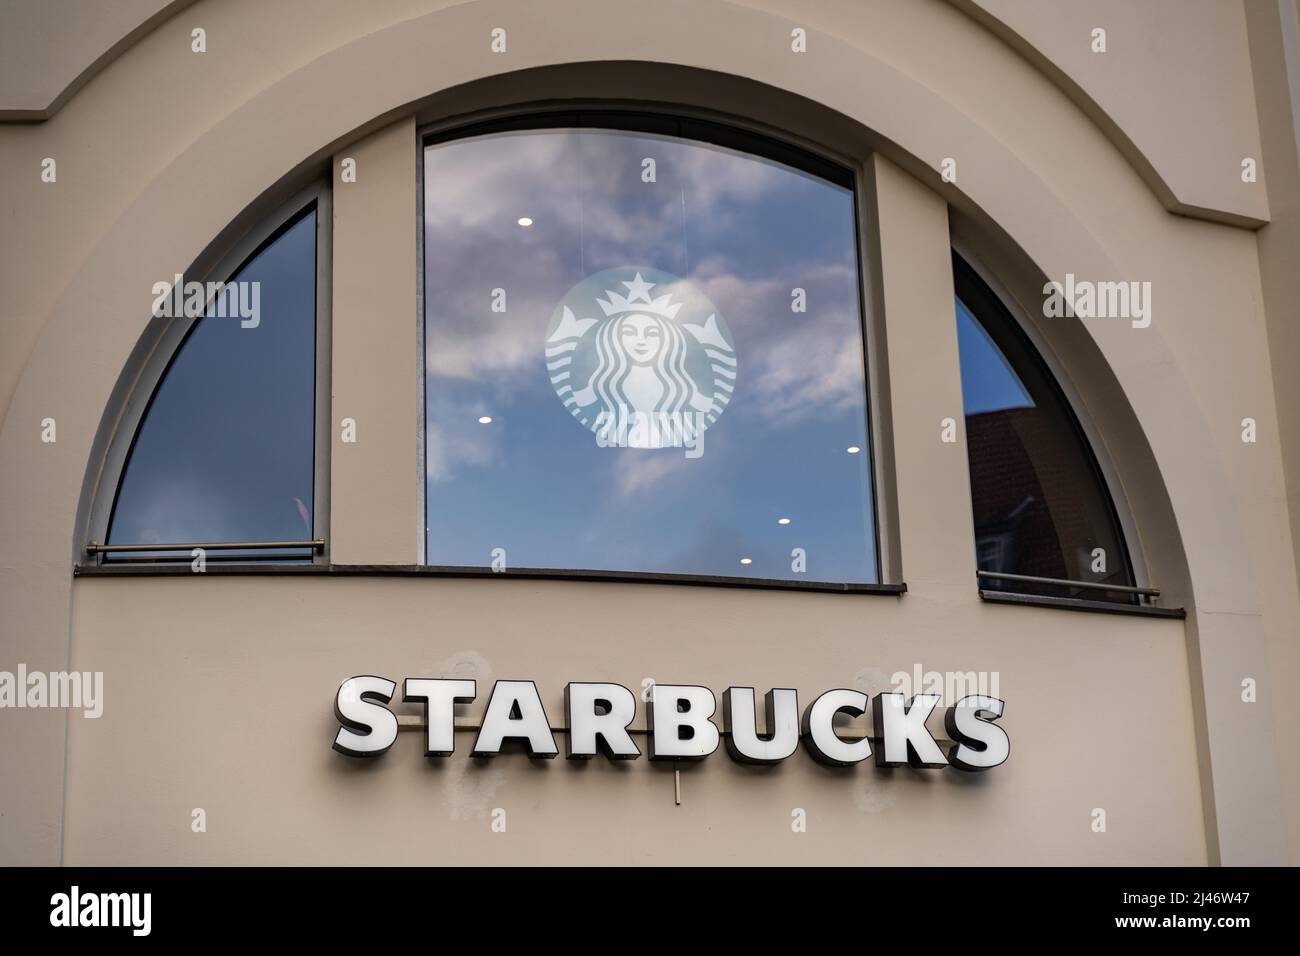 Lettere Starbucks e il logo come parte della facciata di un edificio in città. Pubblicità per la famosa compagnia di caffè che gestisce una franchising Foto Stock